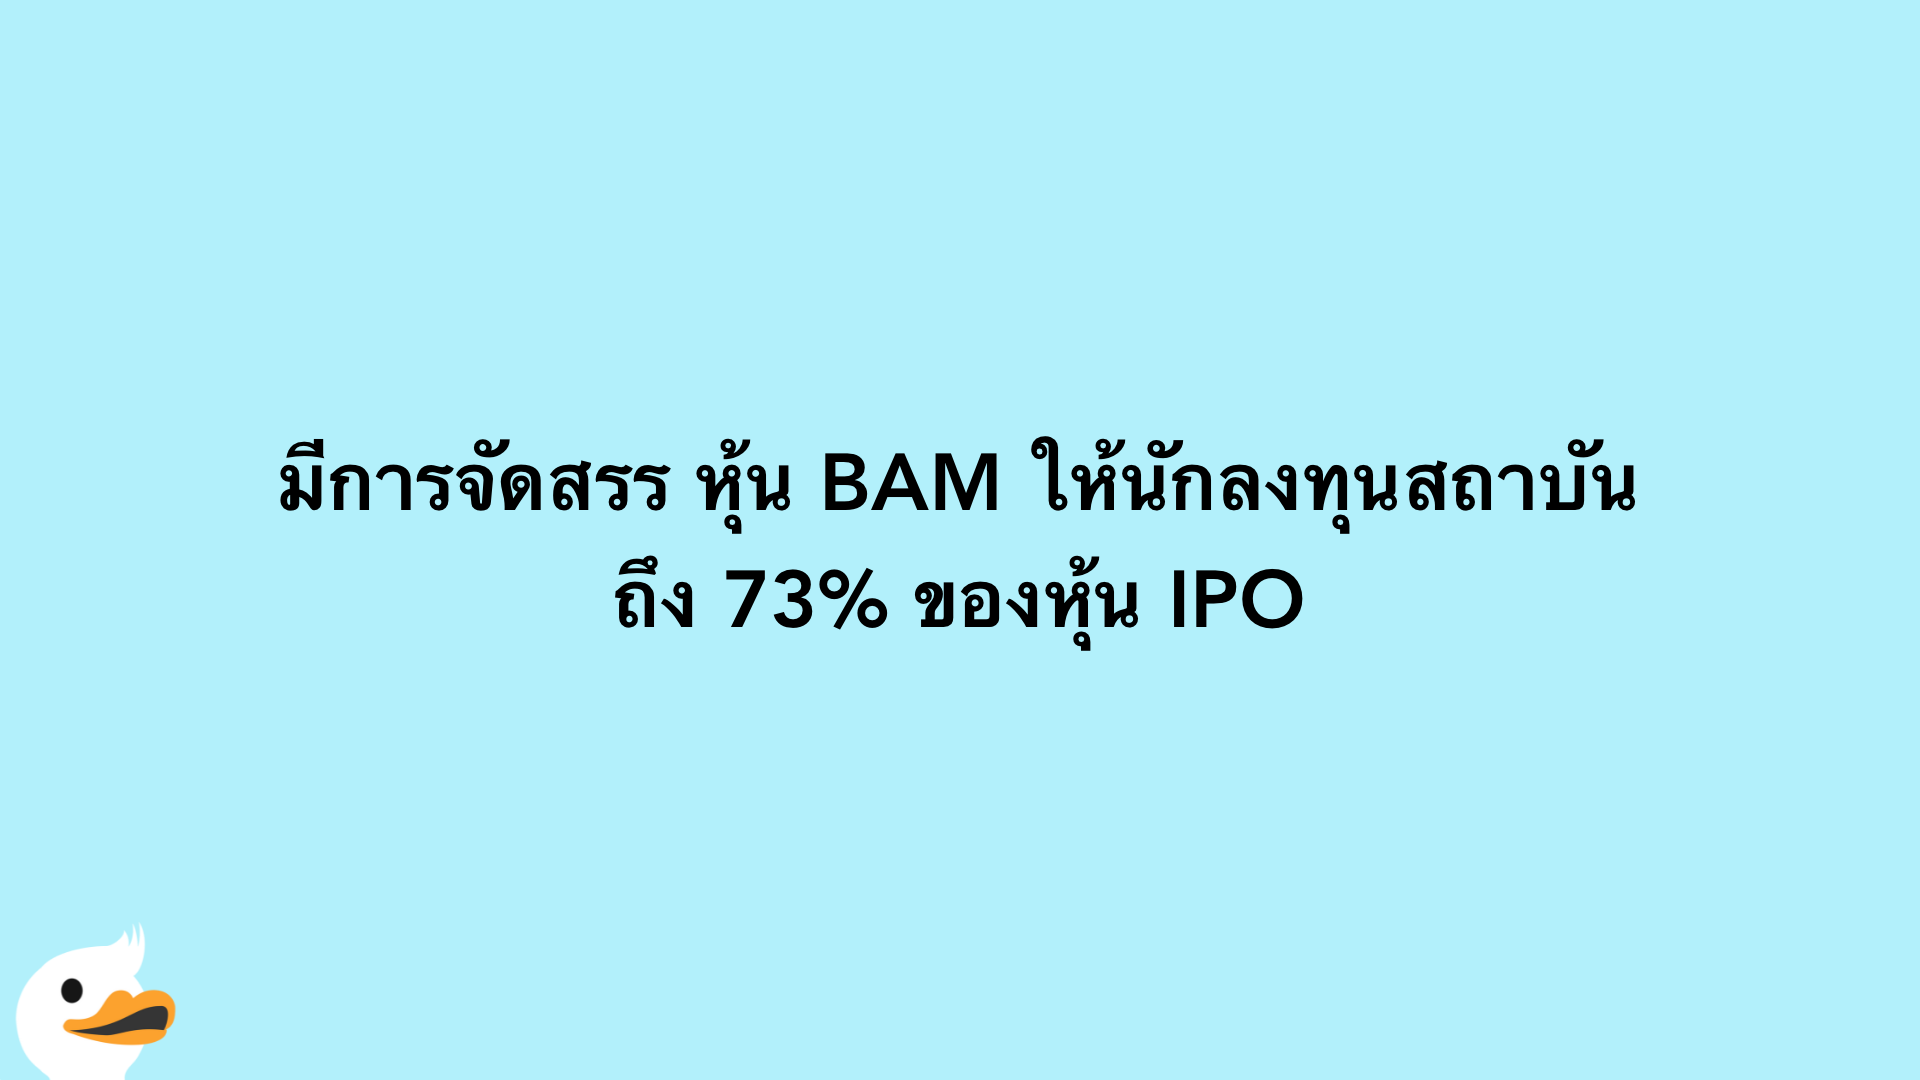 มีการจัดสรร หุ้น BAM ให้นักลงทุนสถาบันถึง 73% ของหุ้น IPO